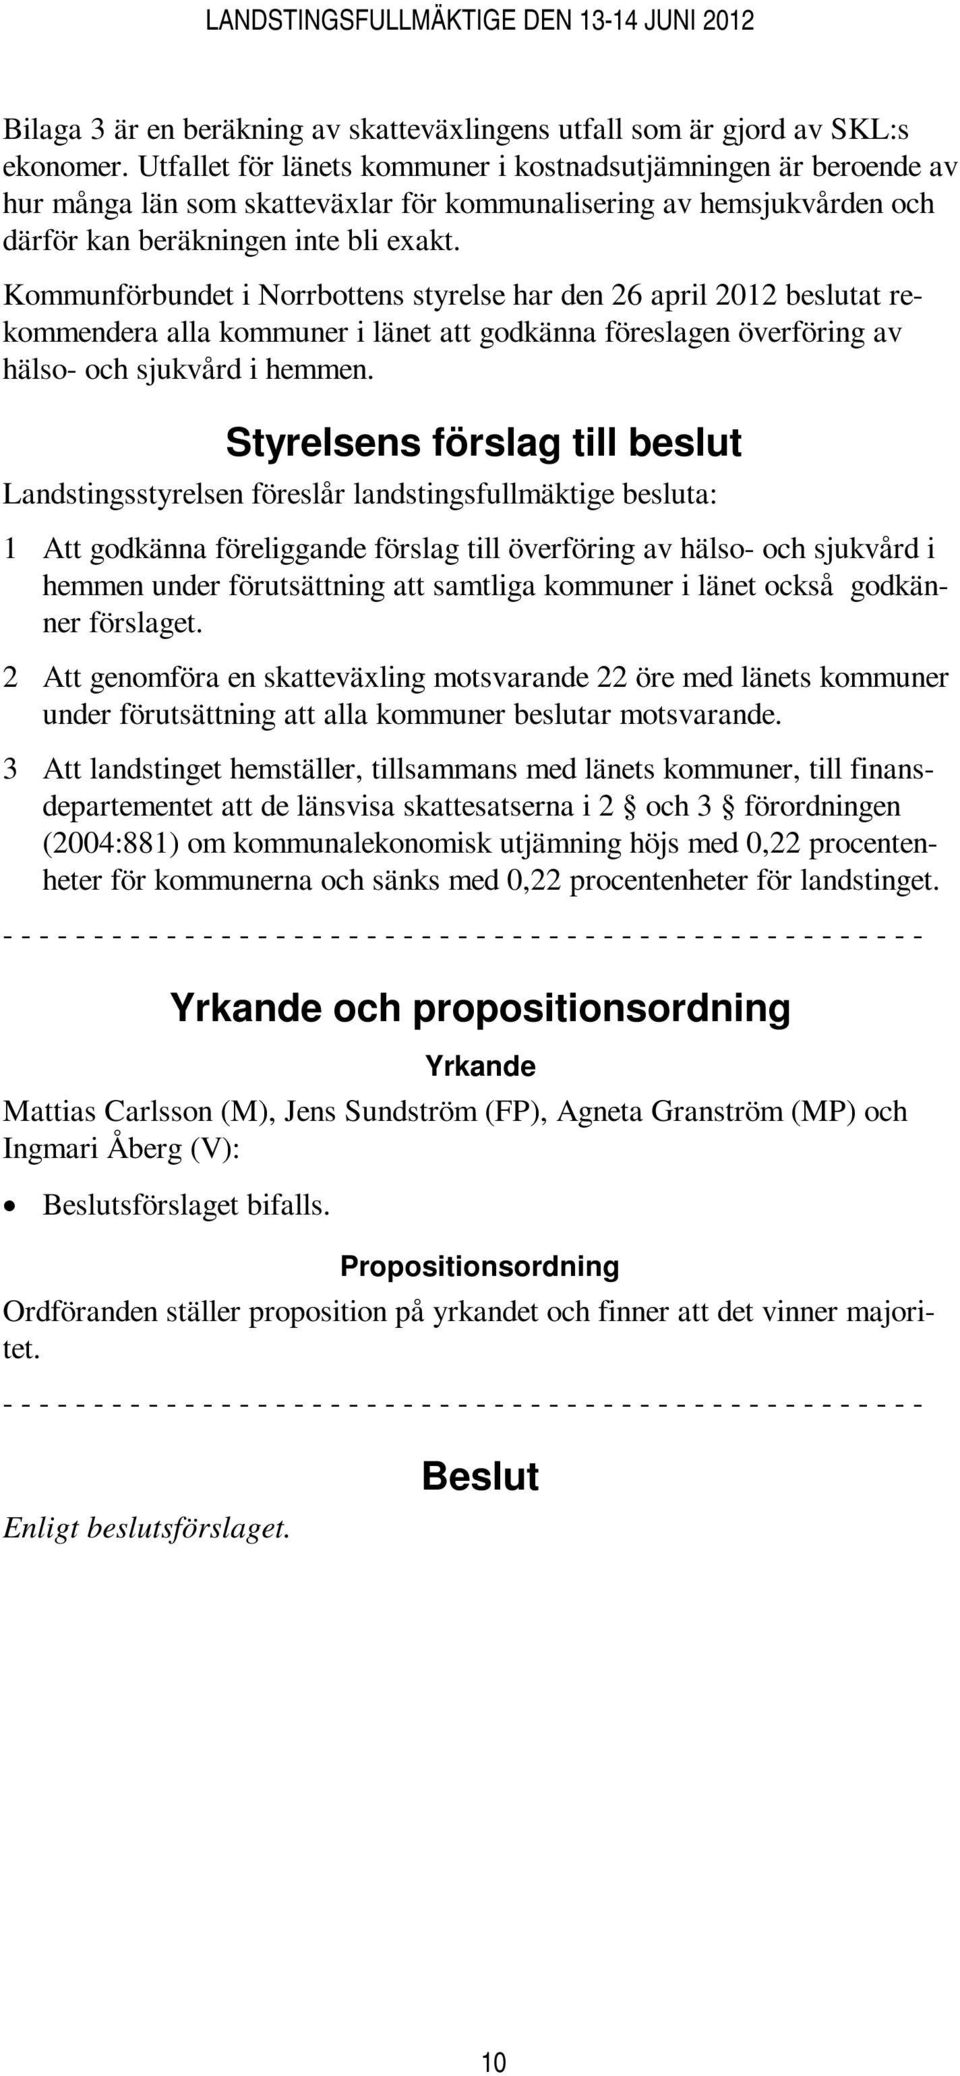 Kommunförbundet i Norrbottens styrelse har den 26 april 2012 beslutat rekommendera alla kommuner i länet att godkänna föreslagen överföring av hälso- och sjukvård i hemmen.